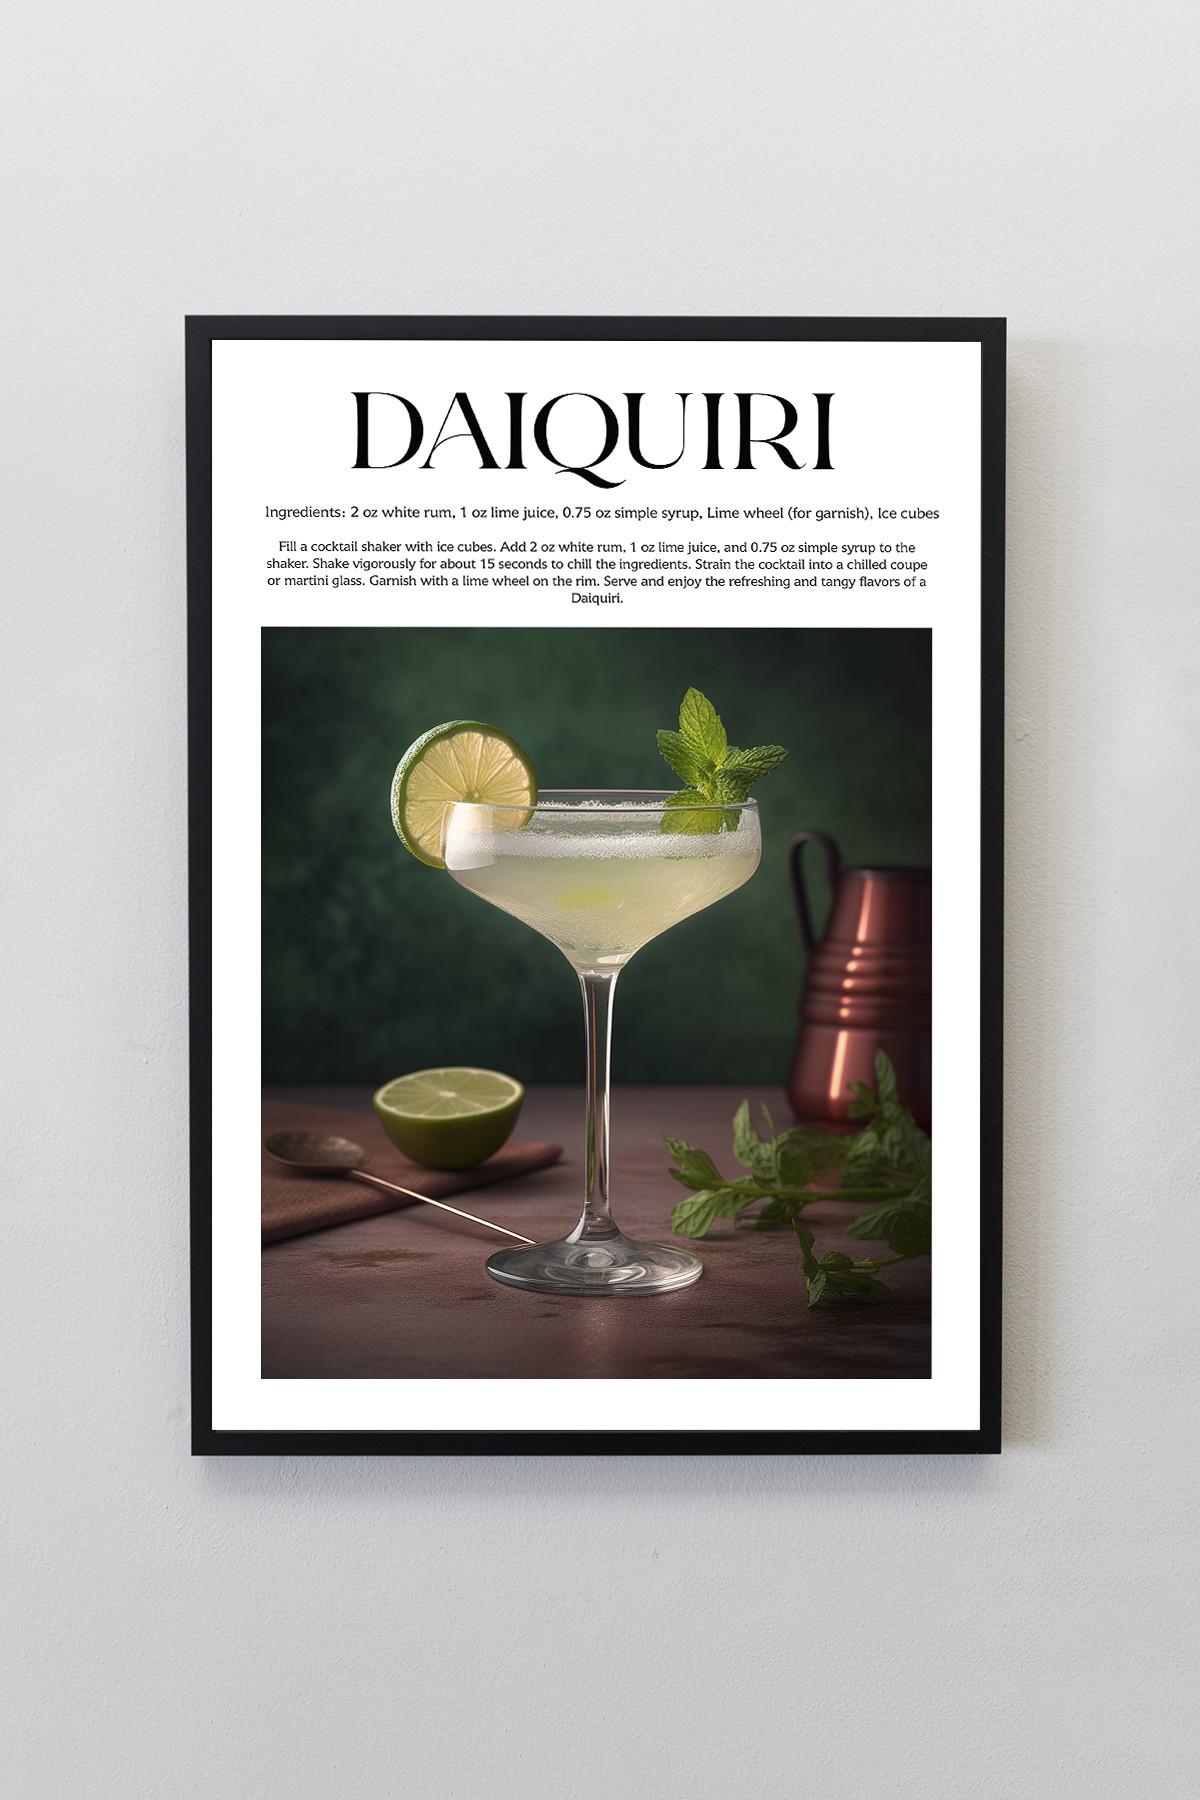 Daiquiri Kokteyl Tarifleri Tasarımlı Çerçeveli Poster Tablo